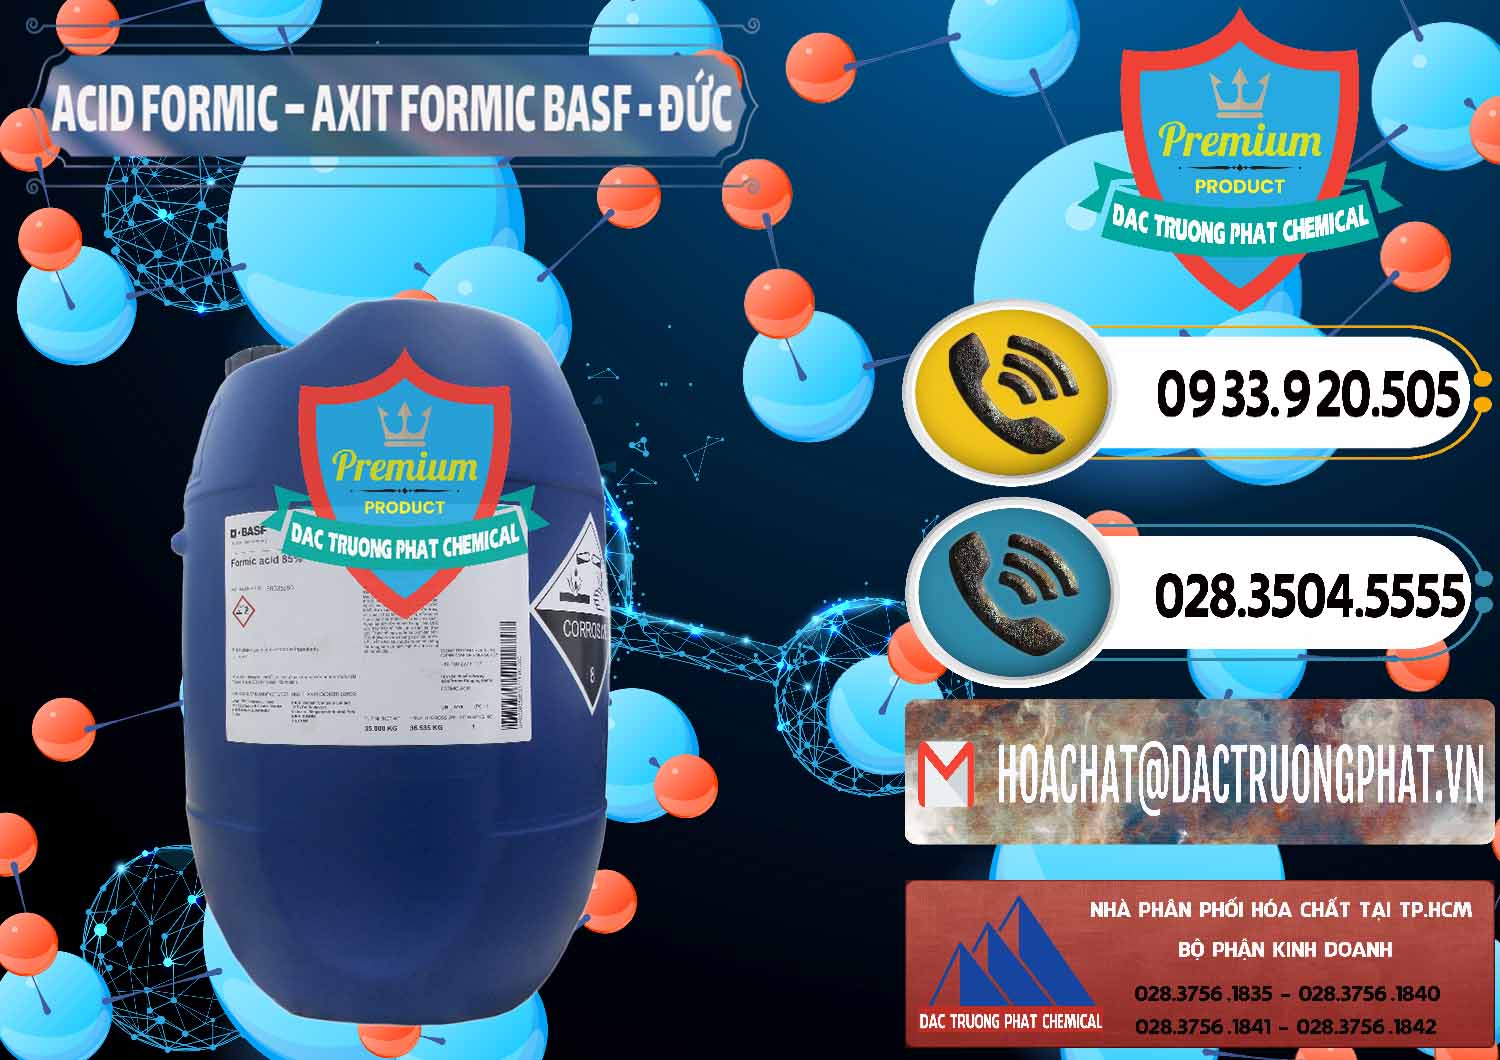 Phân phối & bán Acid Formic - Axit Formic BASF Đức Germany - 0028 - Đơn vị cung cấp & phân phối hóa chất tại TP.HCM - hoachatdetnhuom.vn